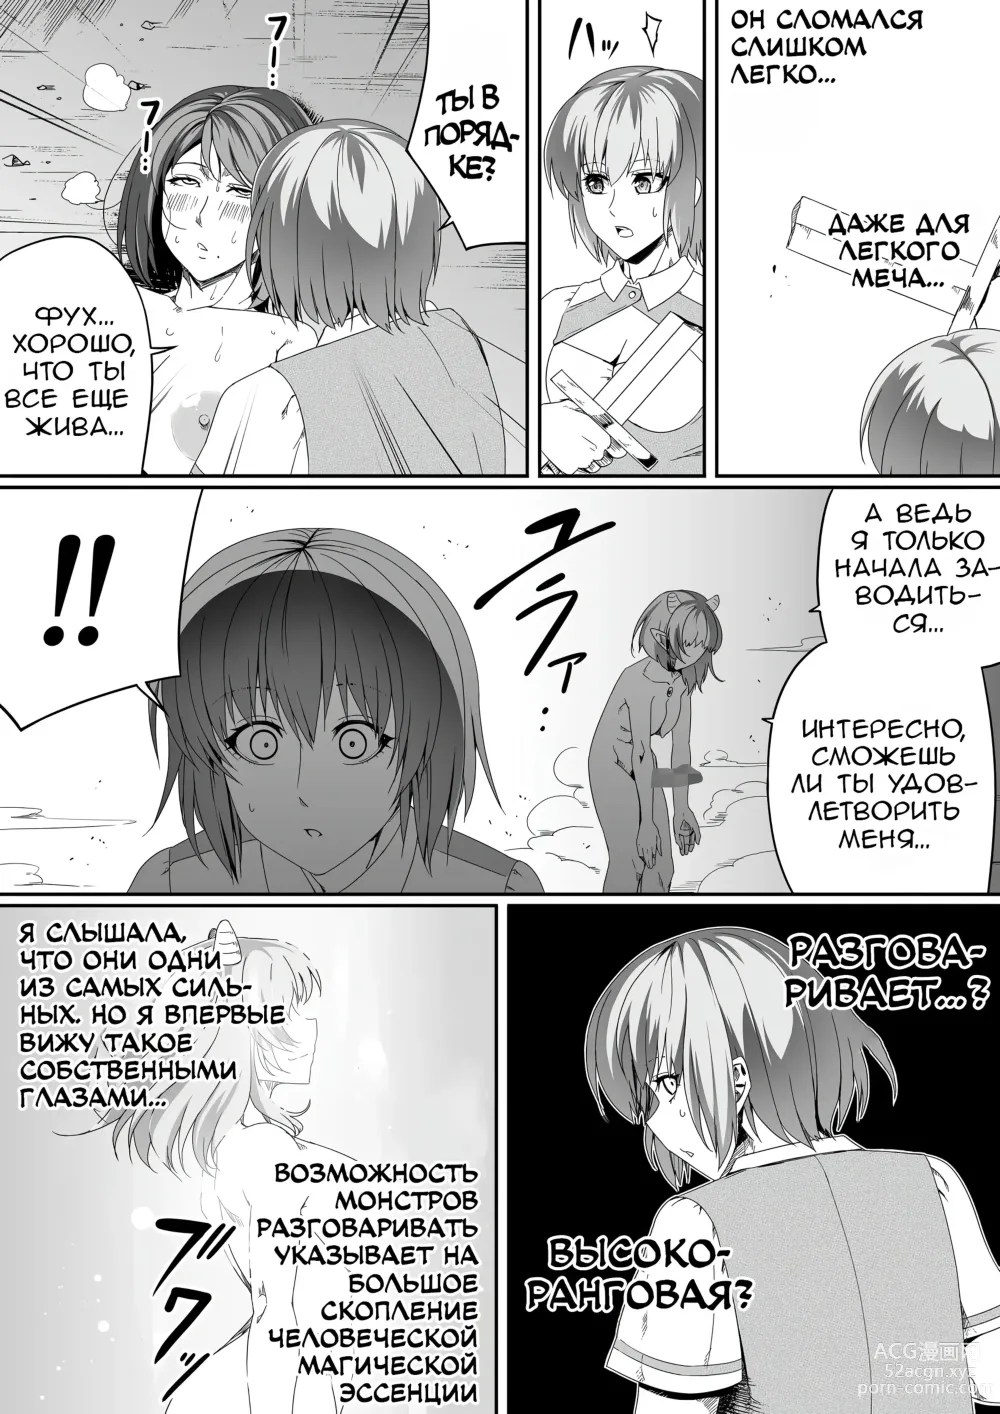 Page 9 of doujinshi Могущественный суккуб, который просто хочет удовлетворить тебя сексуально